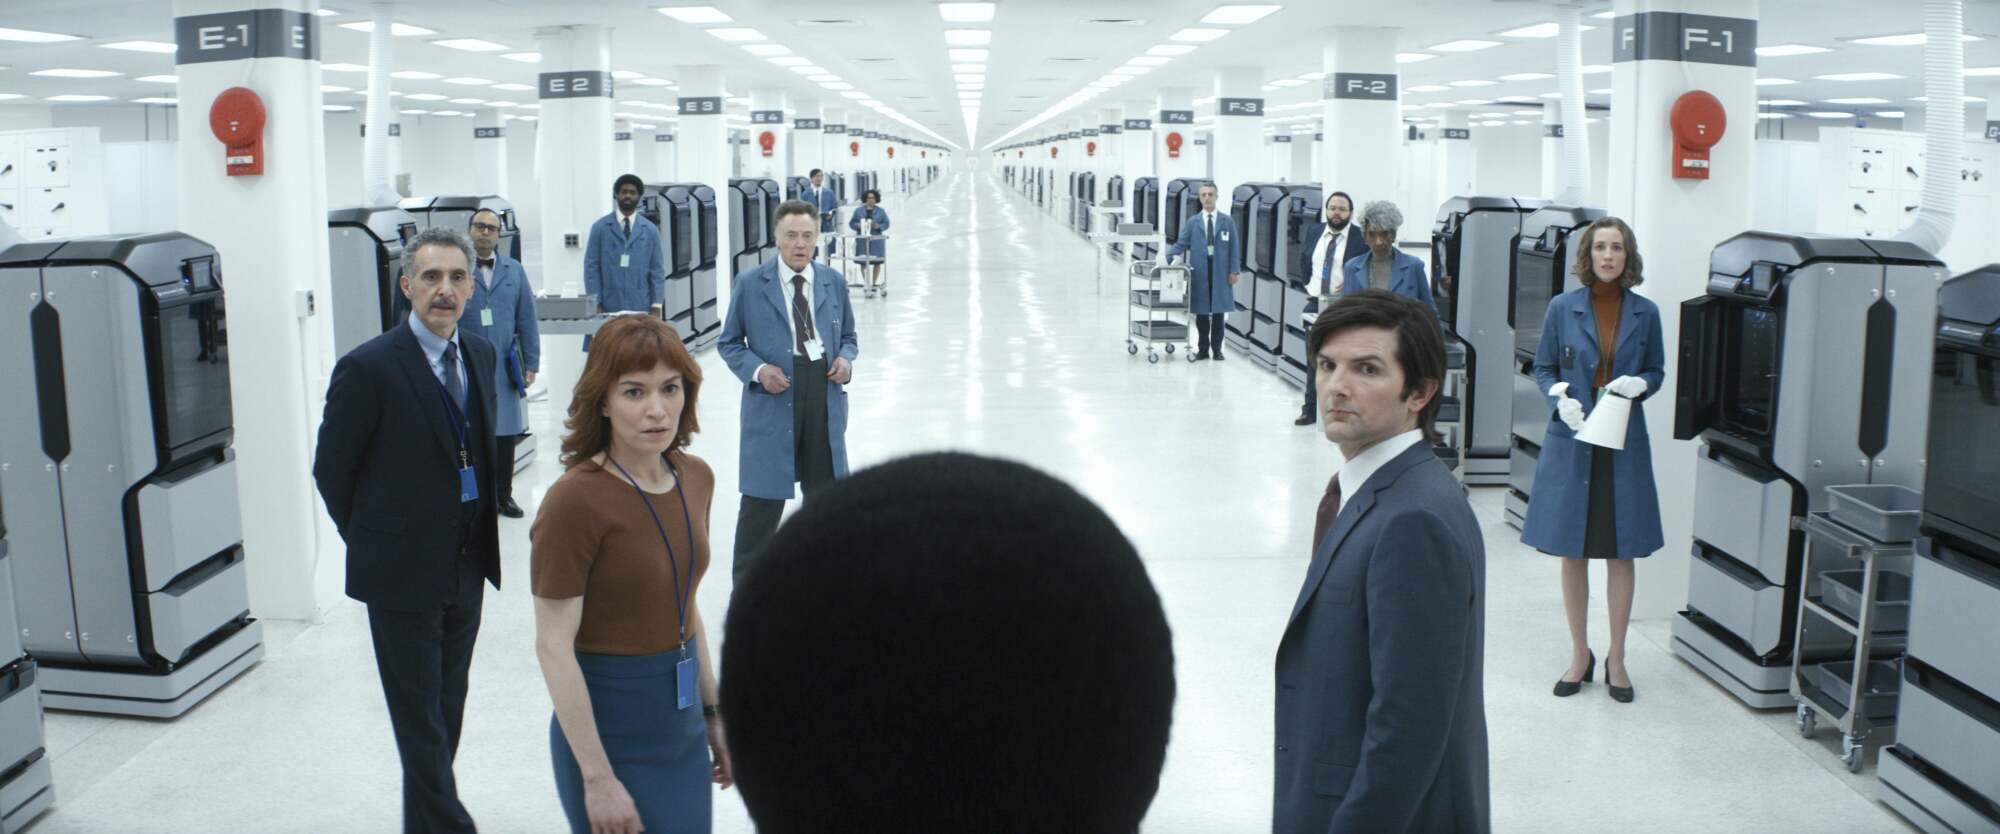 Le casting d'Apple TV+ "Rupture" debout ensemble dans une usine.